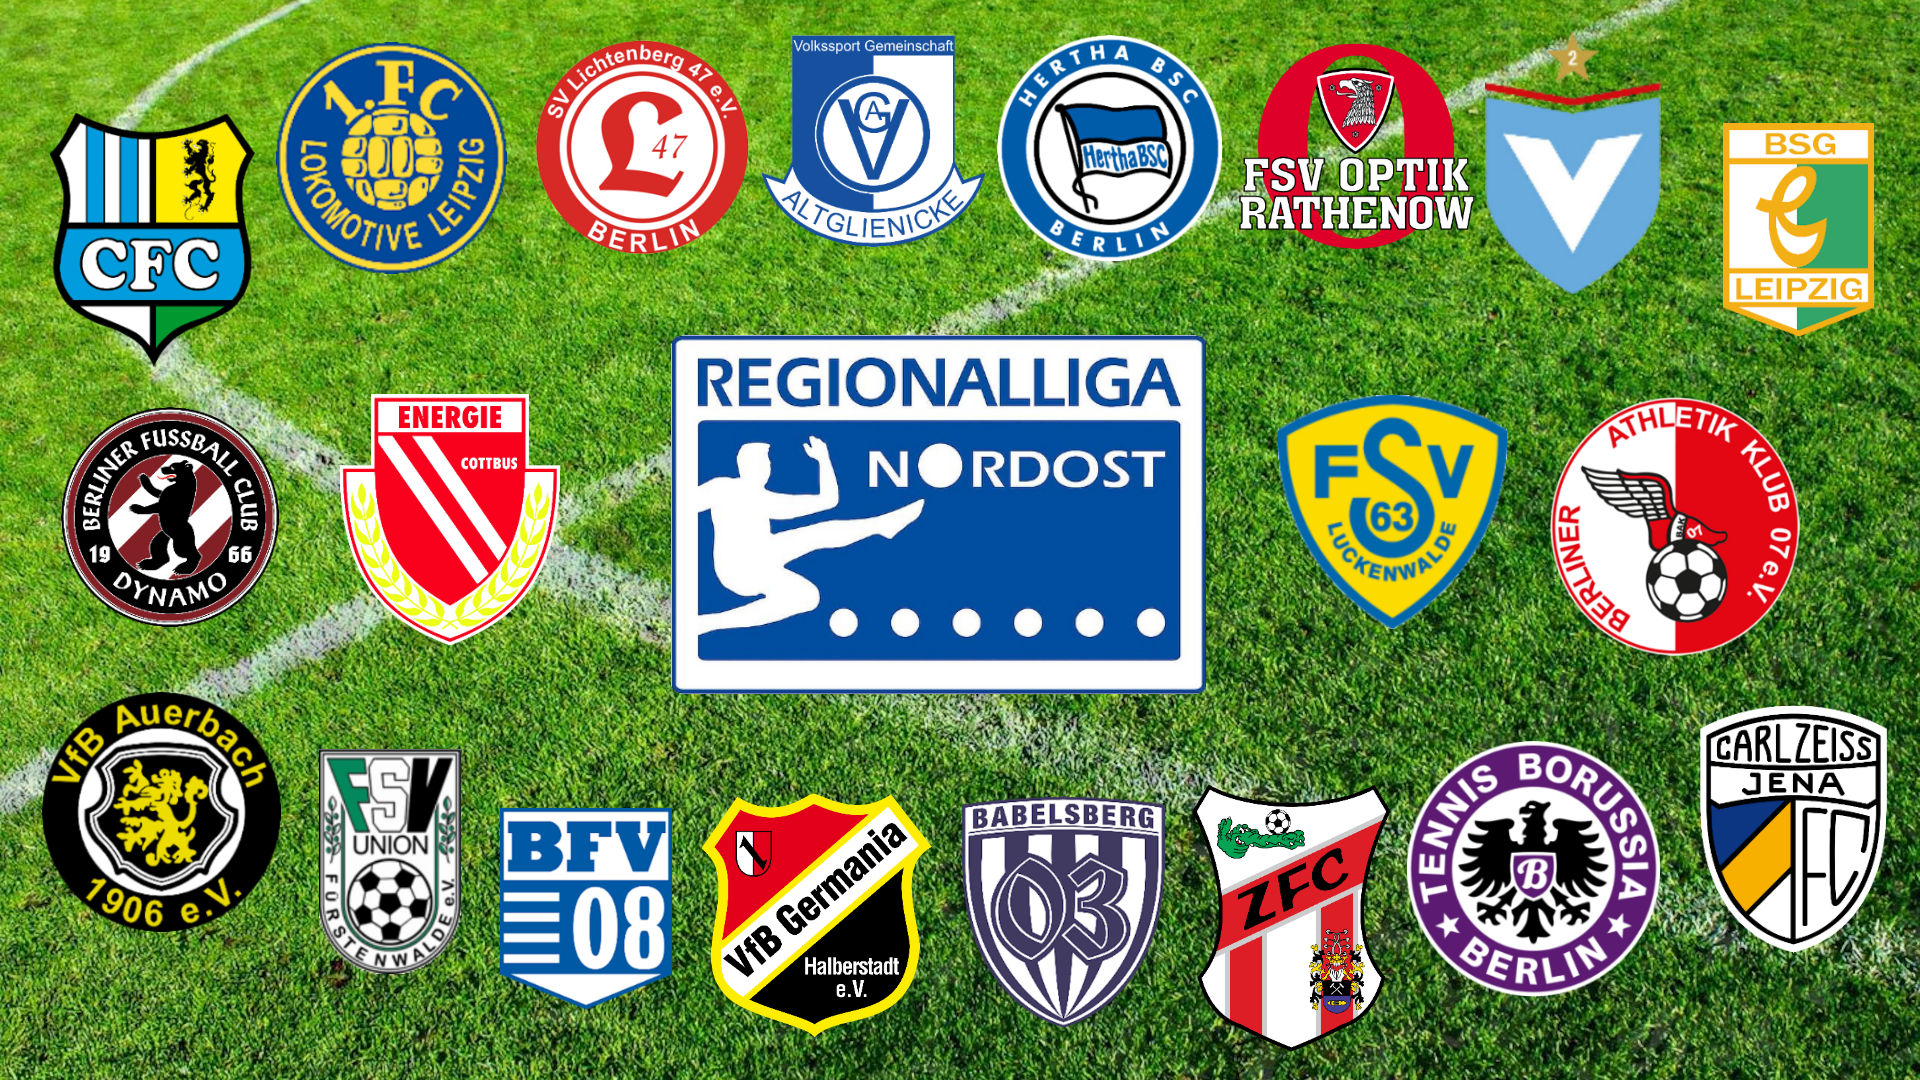 Regionalliga Nordost